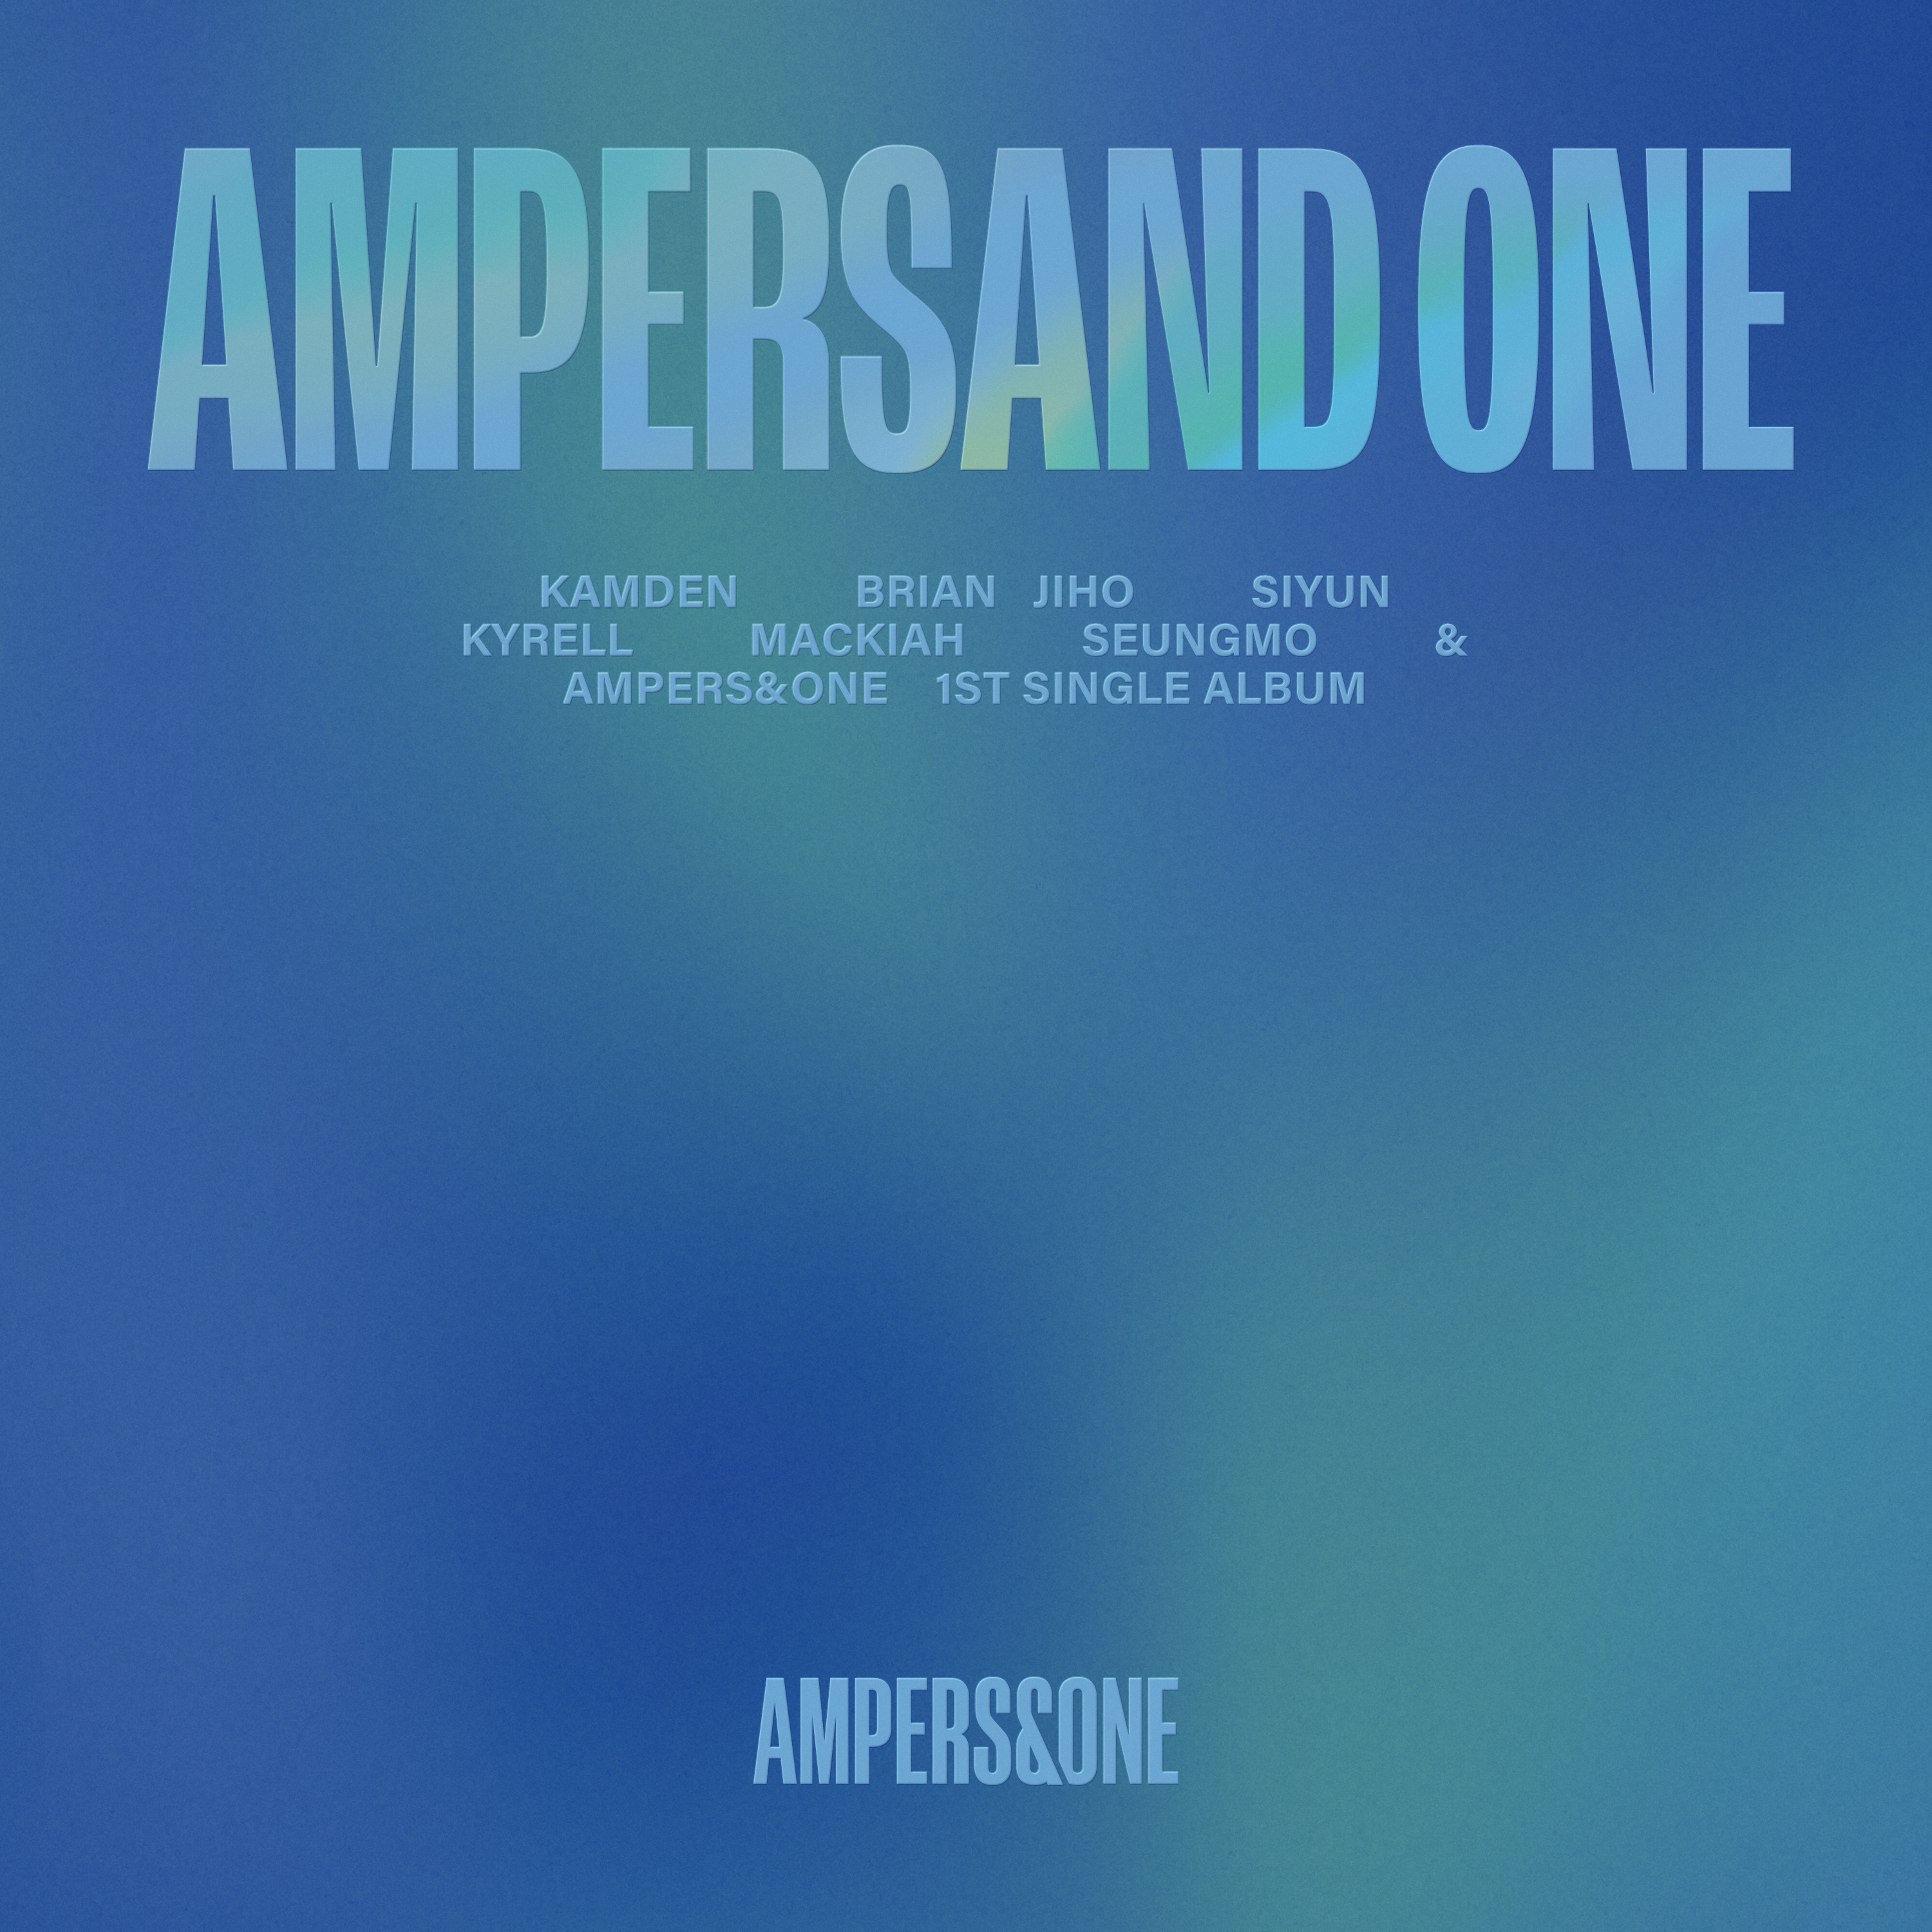 AMPERSAND ONE-앰퍼샌드원 (AMPERS&ONE)